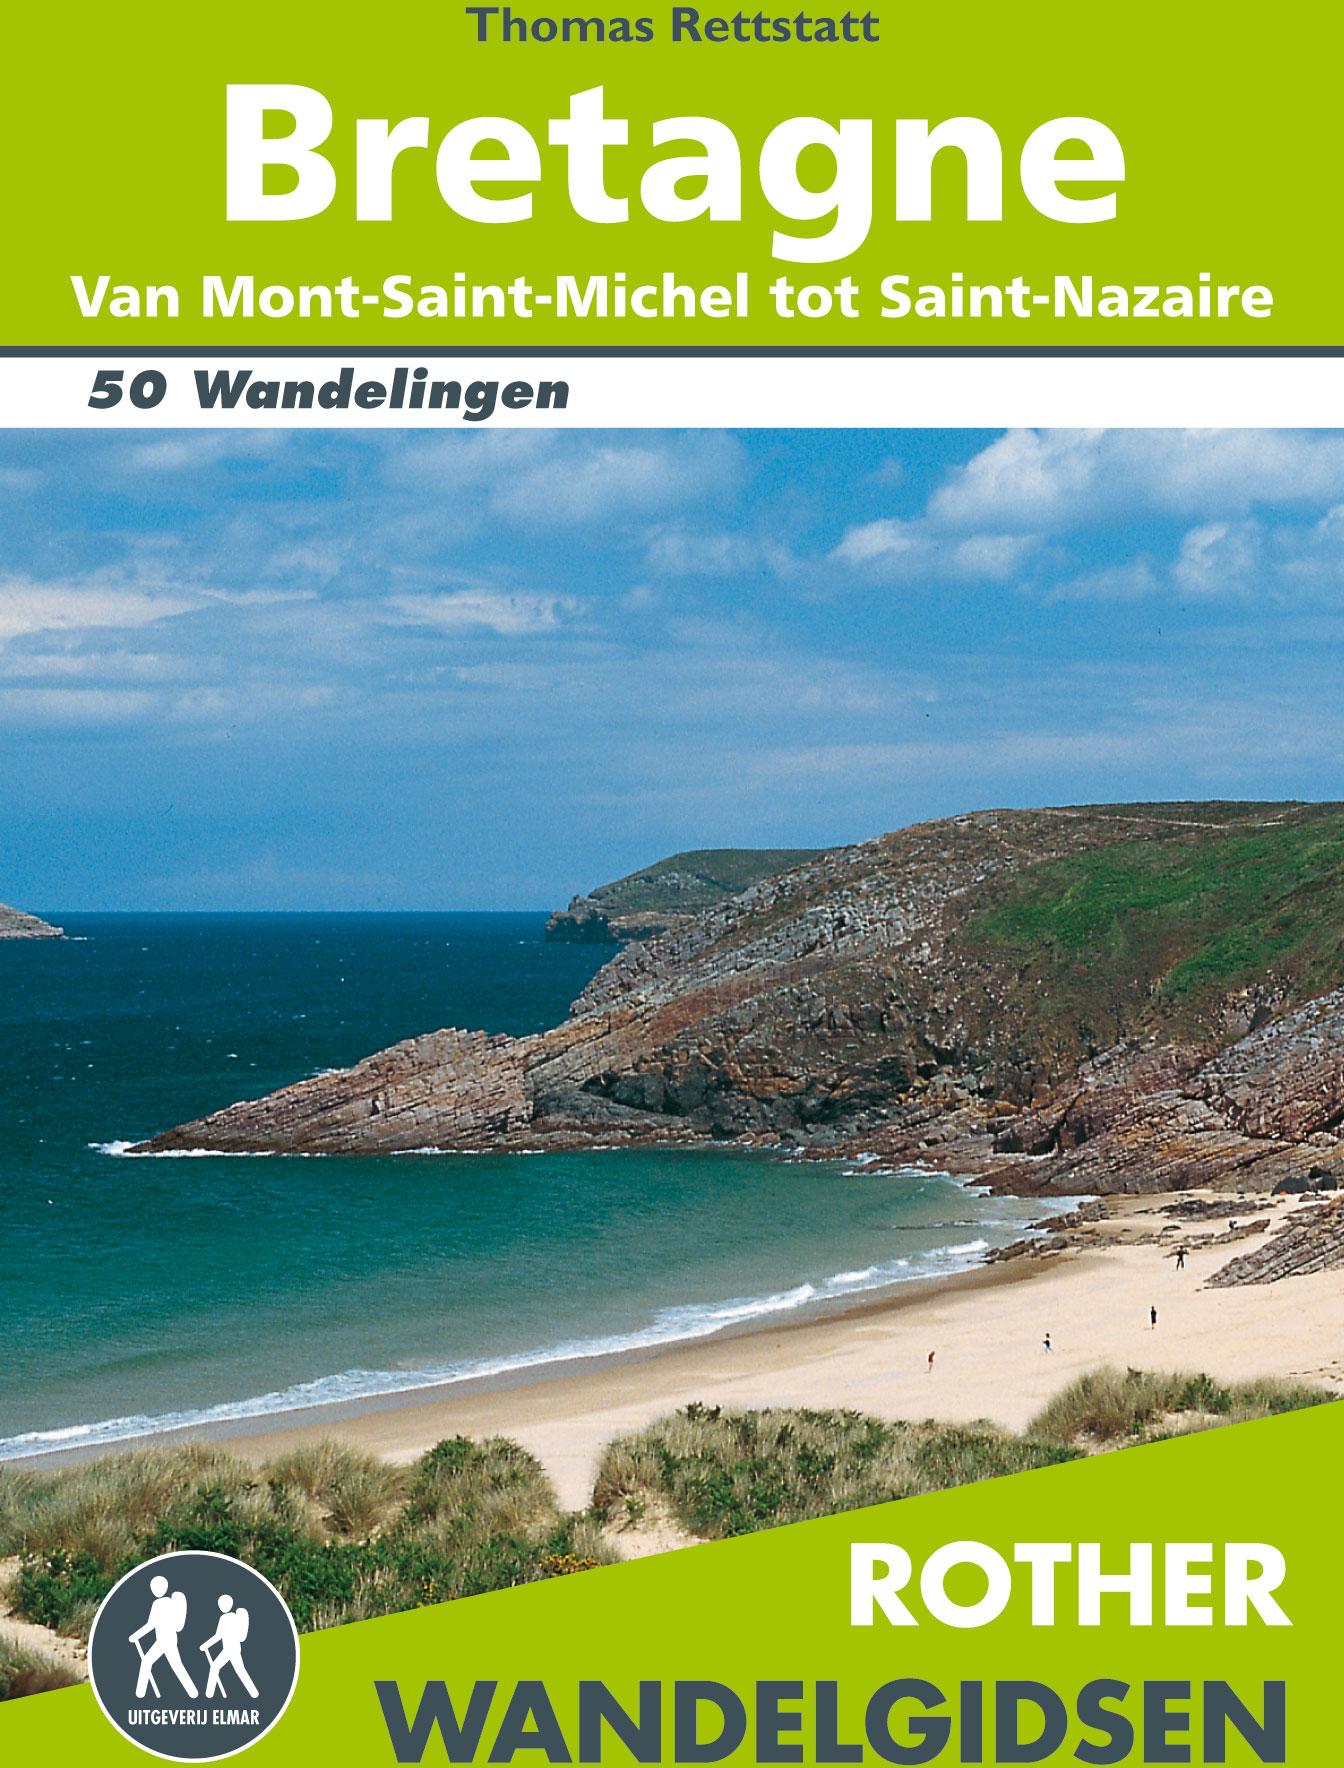 Bretagne wandelgids 50 wandelingen